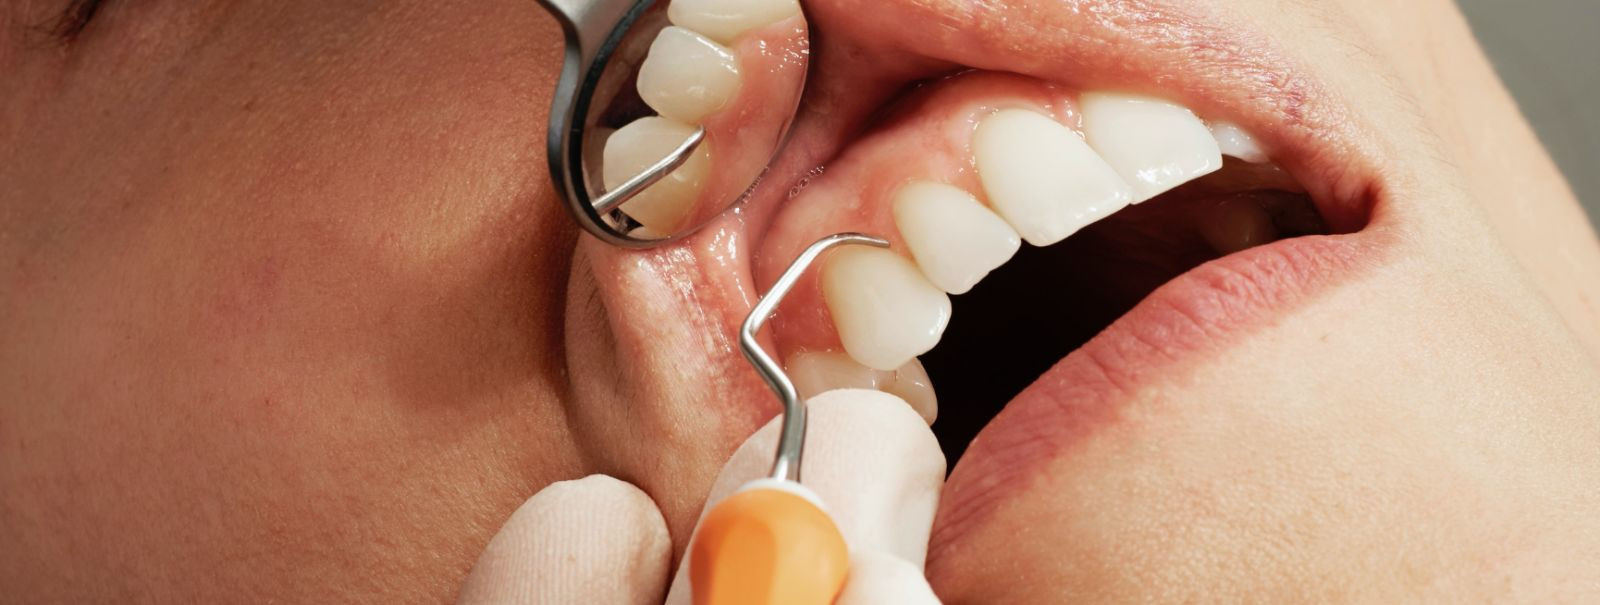 Kui otsite usaldusväärset ja professionaalset hambaraviteenust, siis olete jõudnud õigesse kohta. EPP SARAPUU HAMBARAVI on kogemustega hambaravikliinik, kus pak